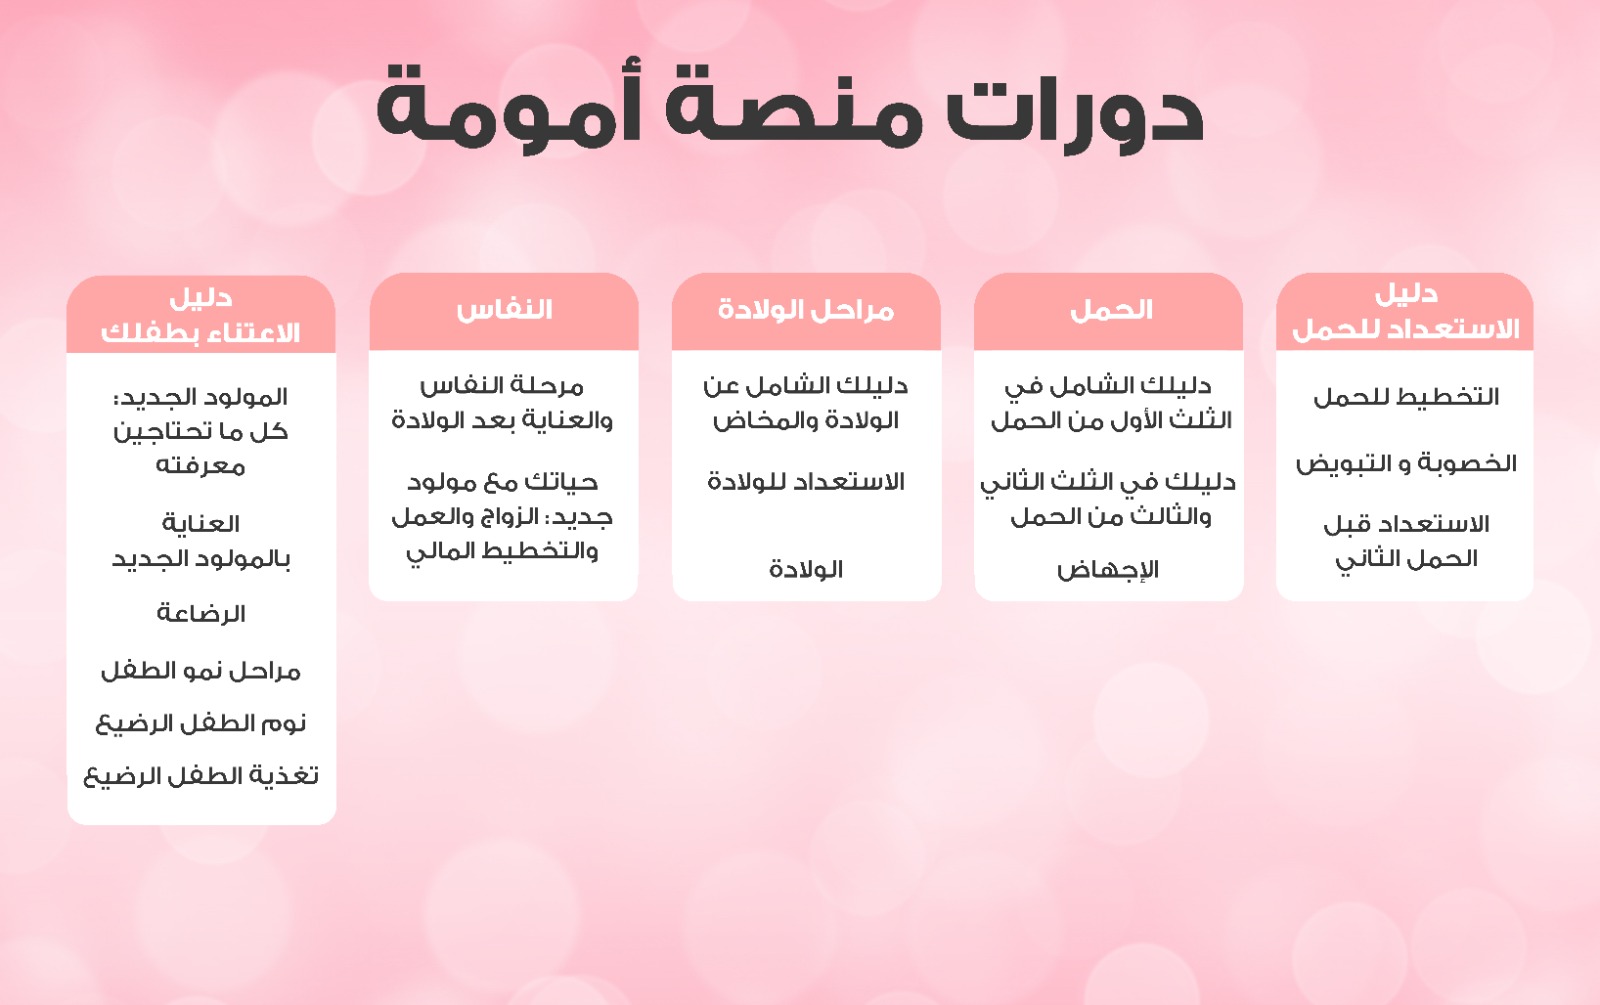 “أمومة” منصة عربية موثوقة لدعم الأمهات تقدم دورات تدريبية مجانية لمدة شهر